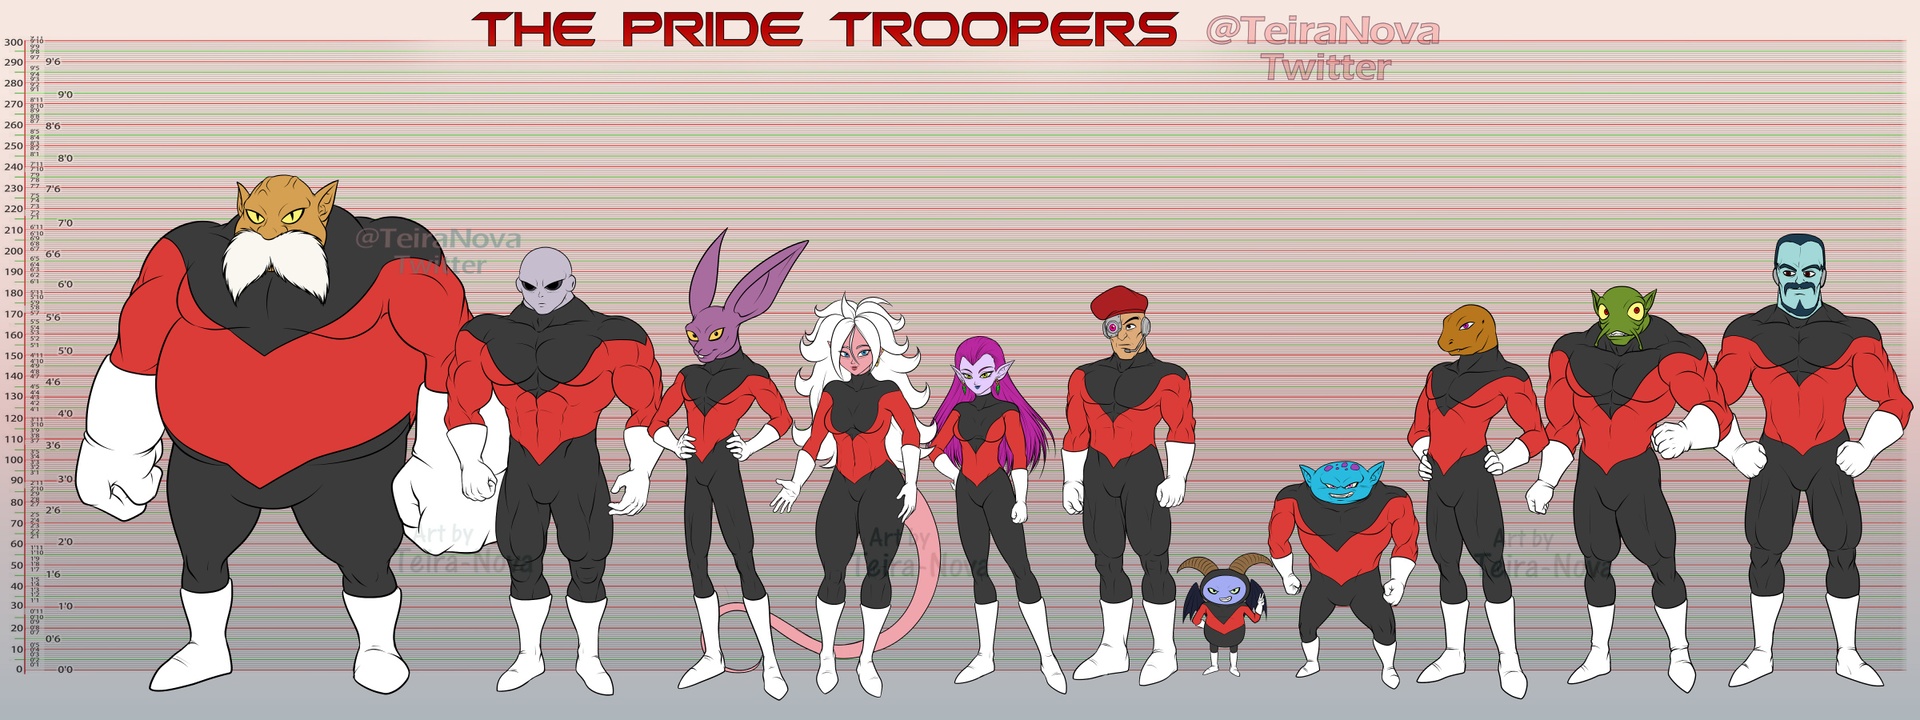 Height chart - Pride Troopers.jpg